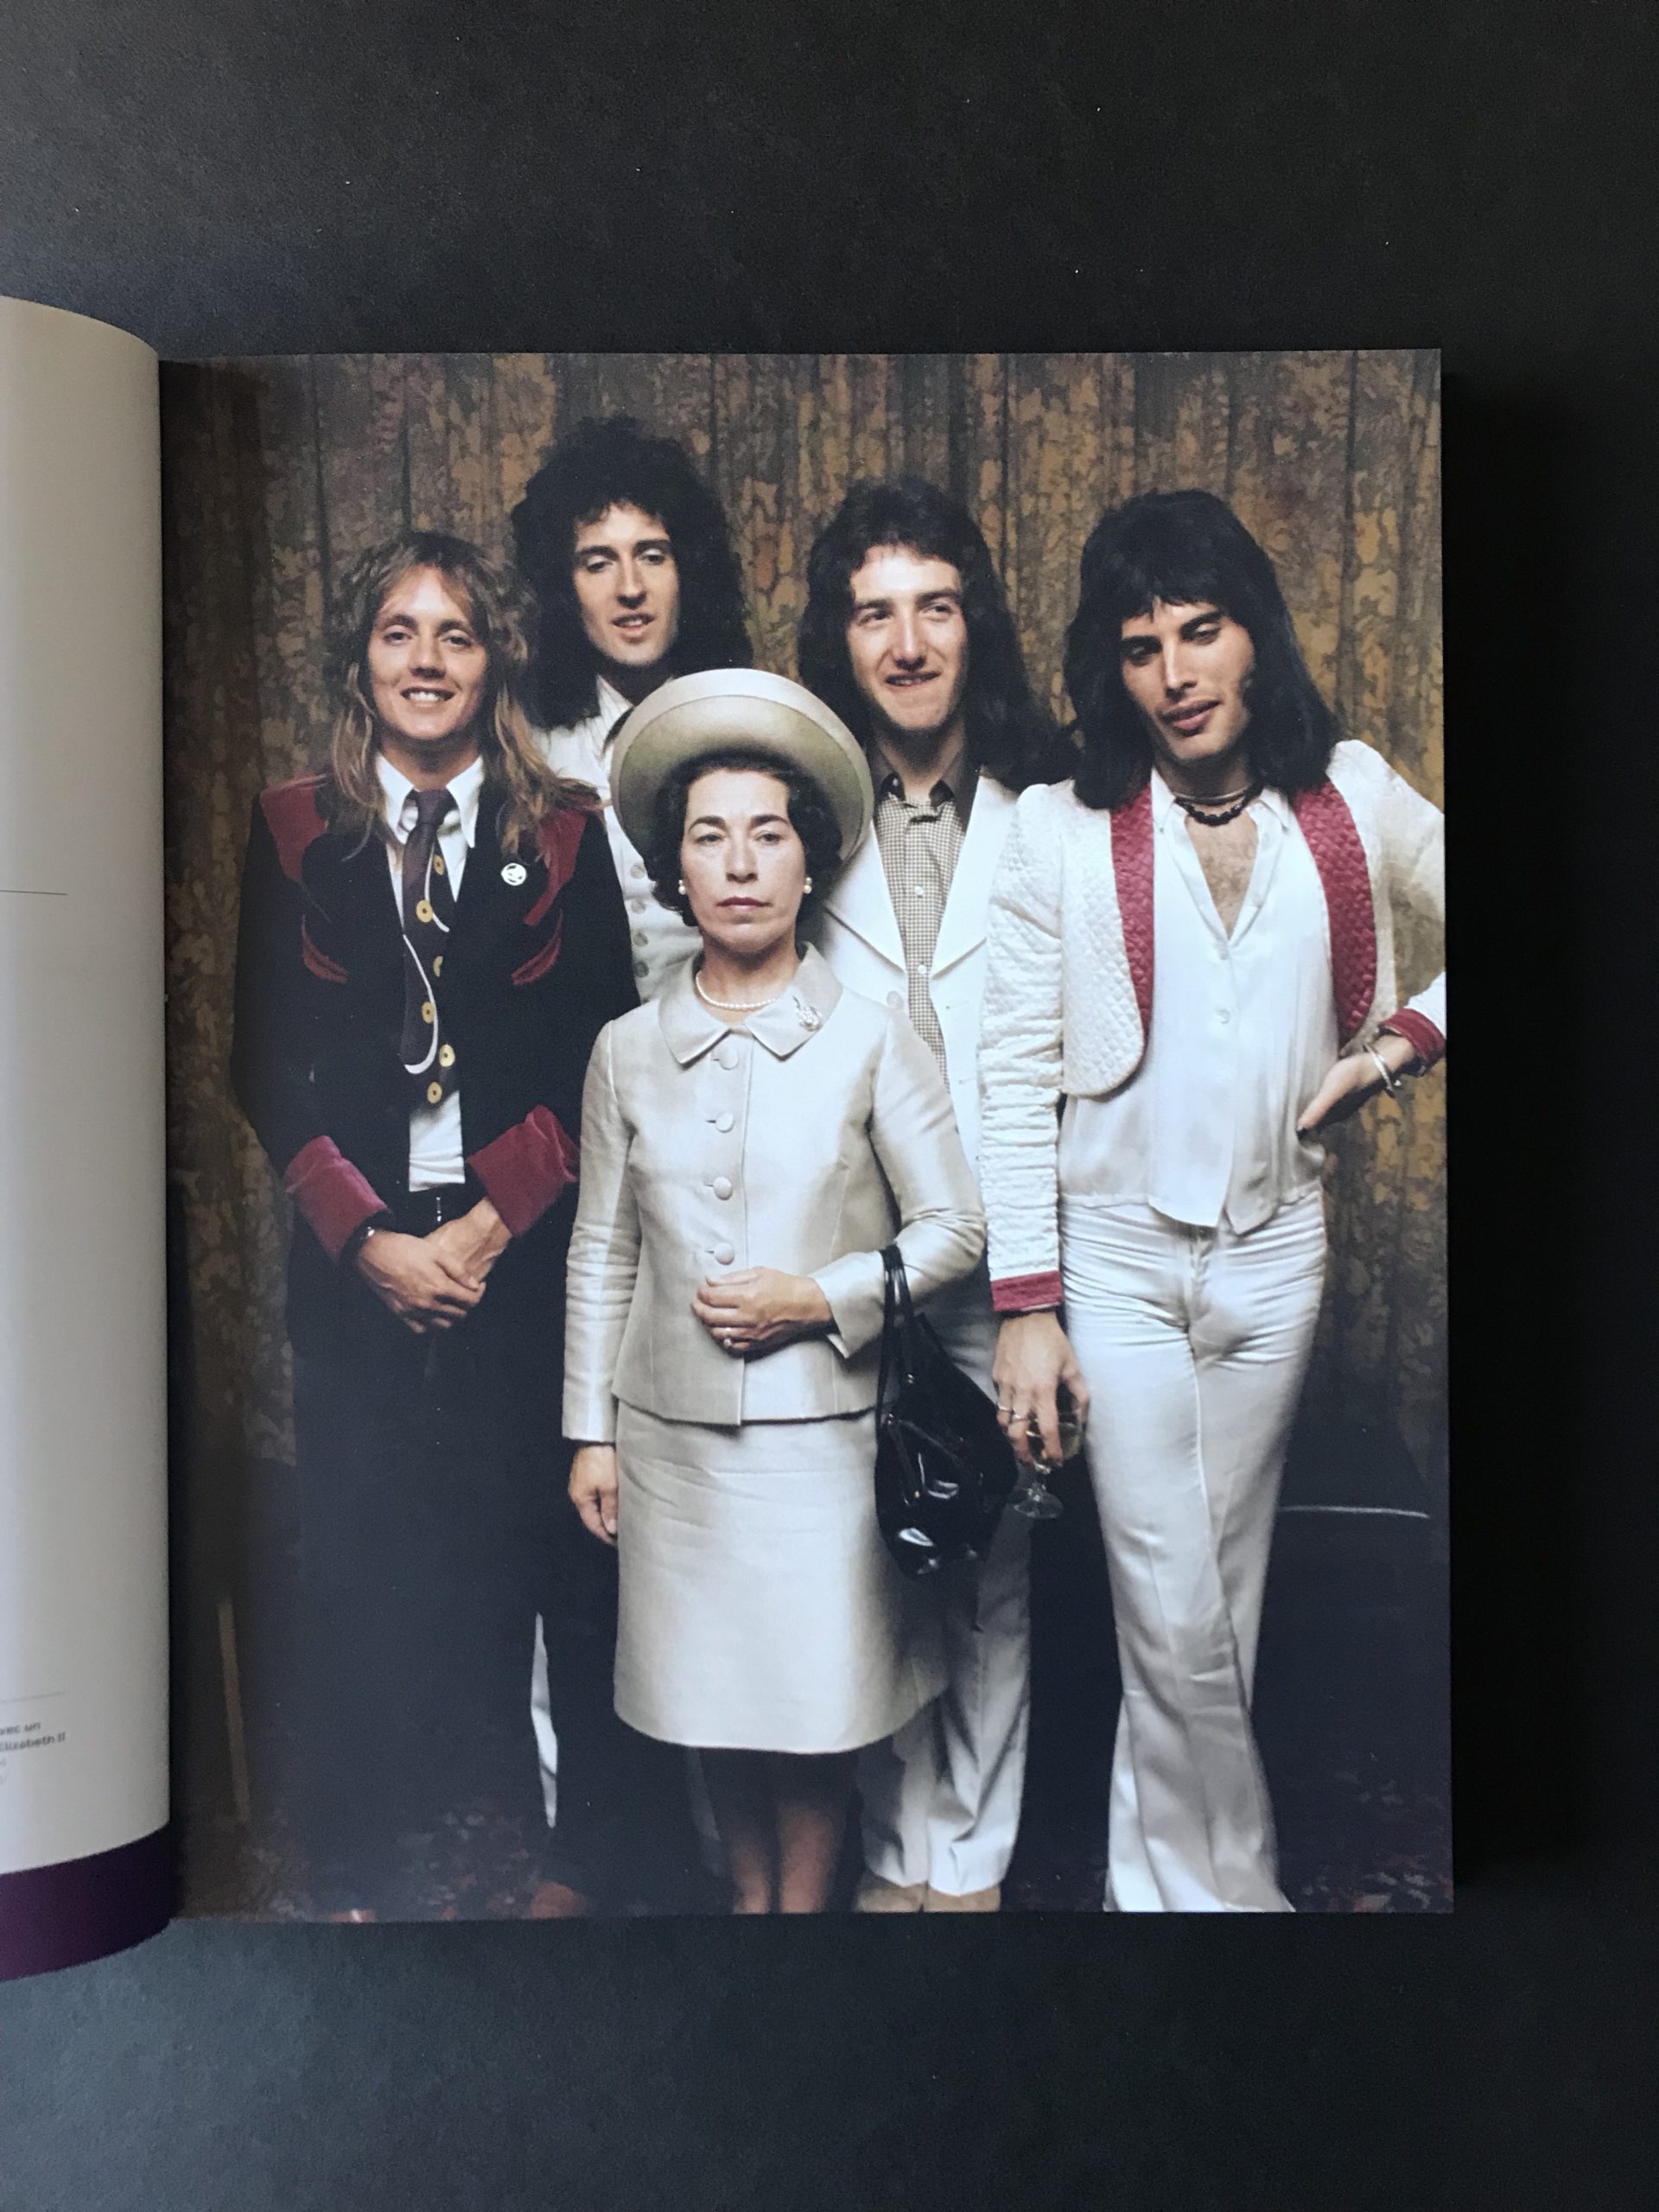 Queen - The show must go on, un beaux livre biographique